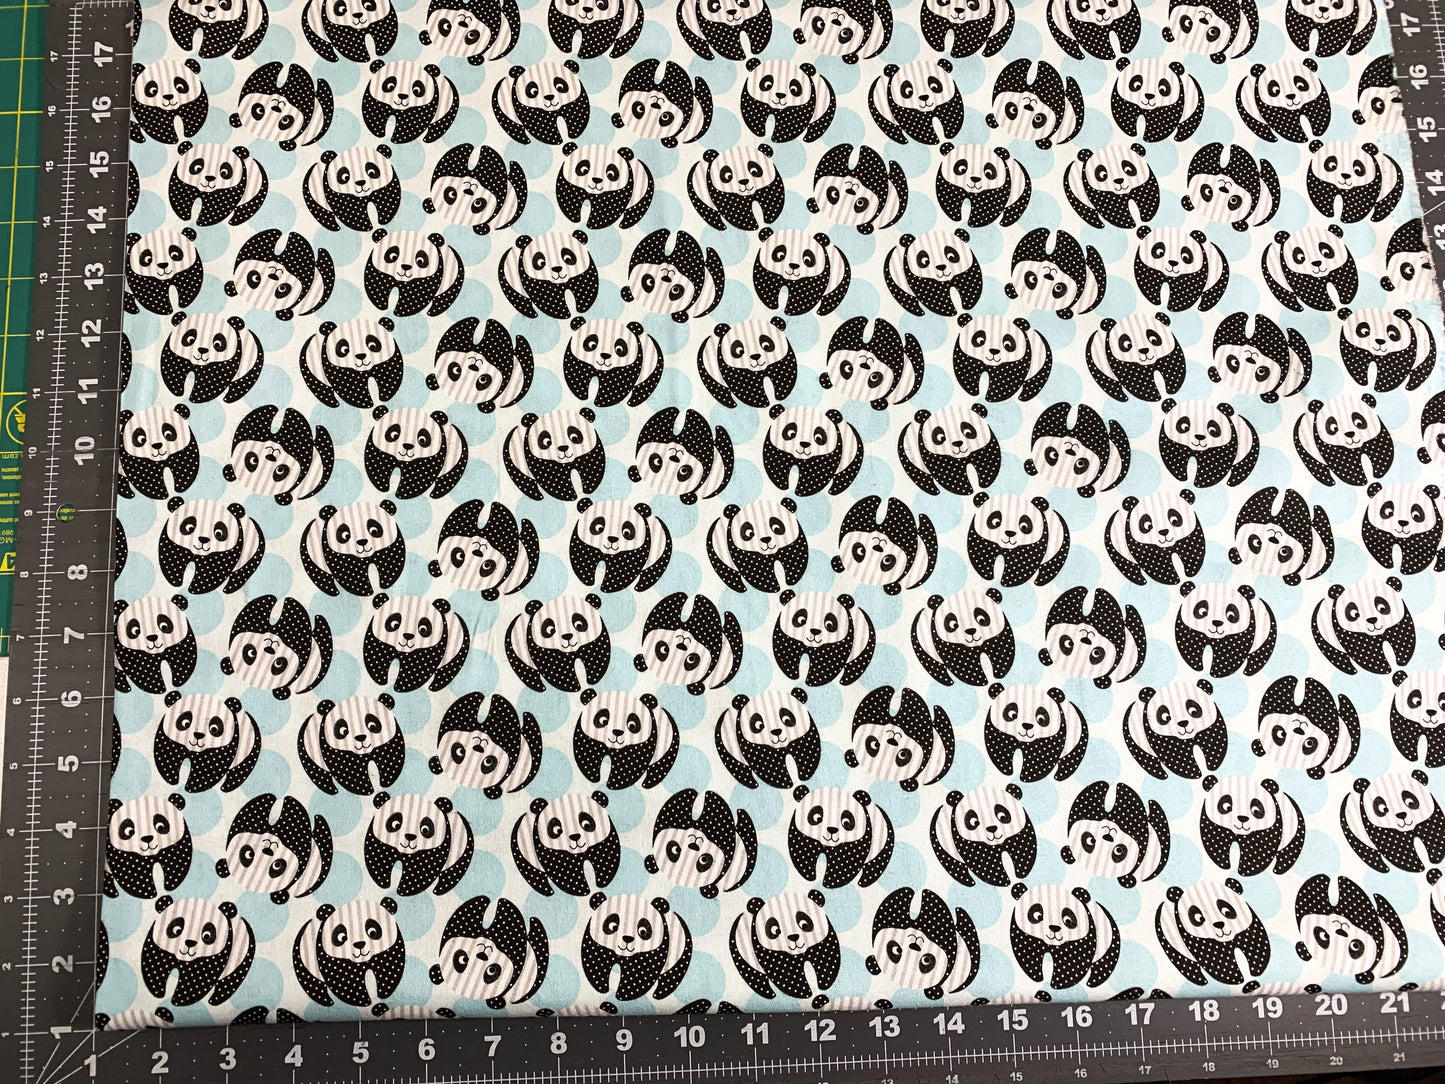 At the Zoo Blue panda bear fabric 6602 Panda bears fabric